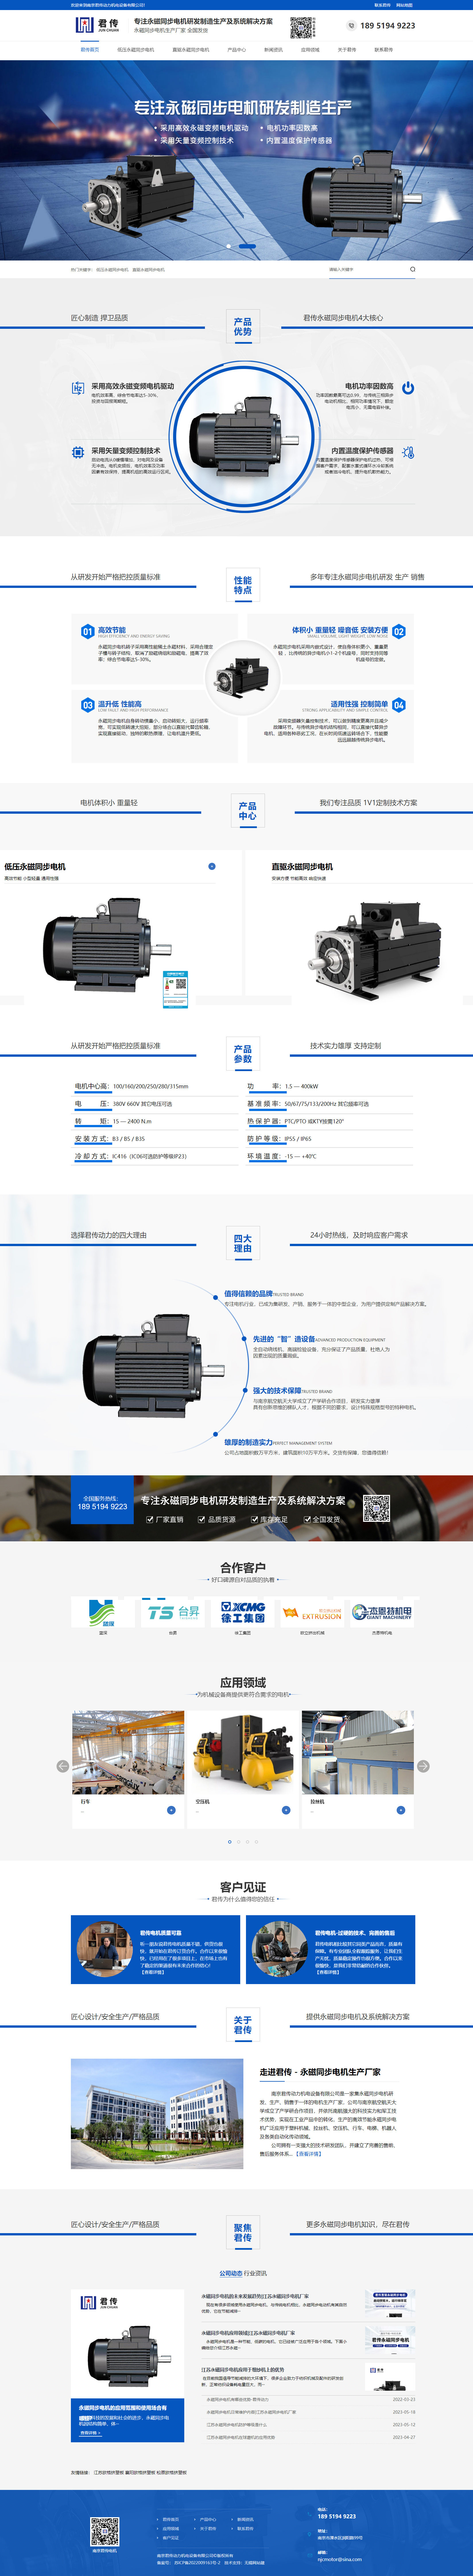 南京君傳營銷型網站建設 PC端預覽圖